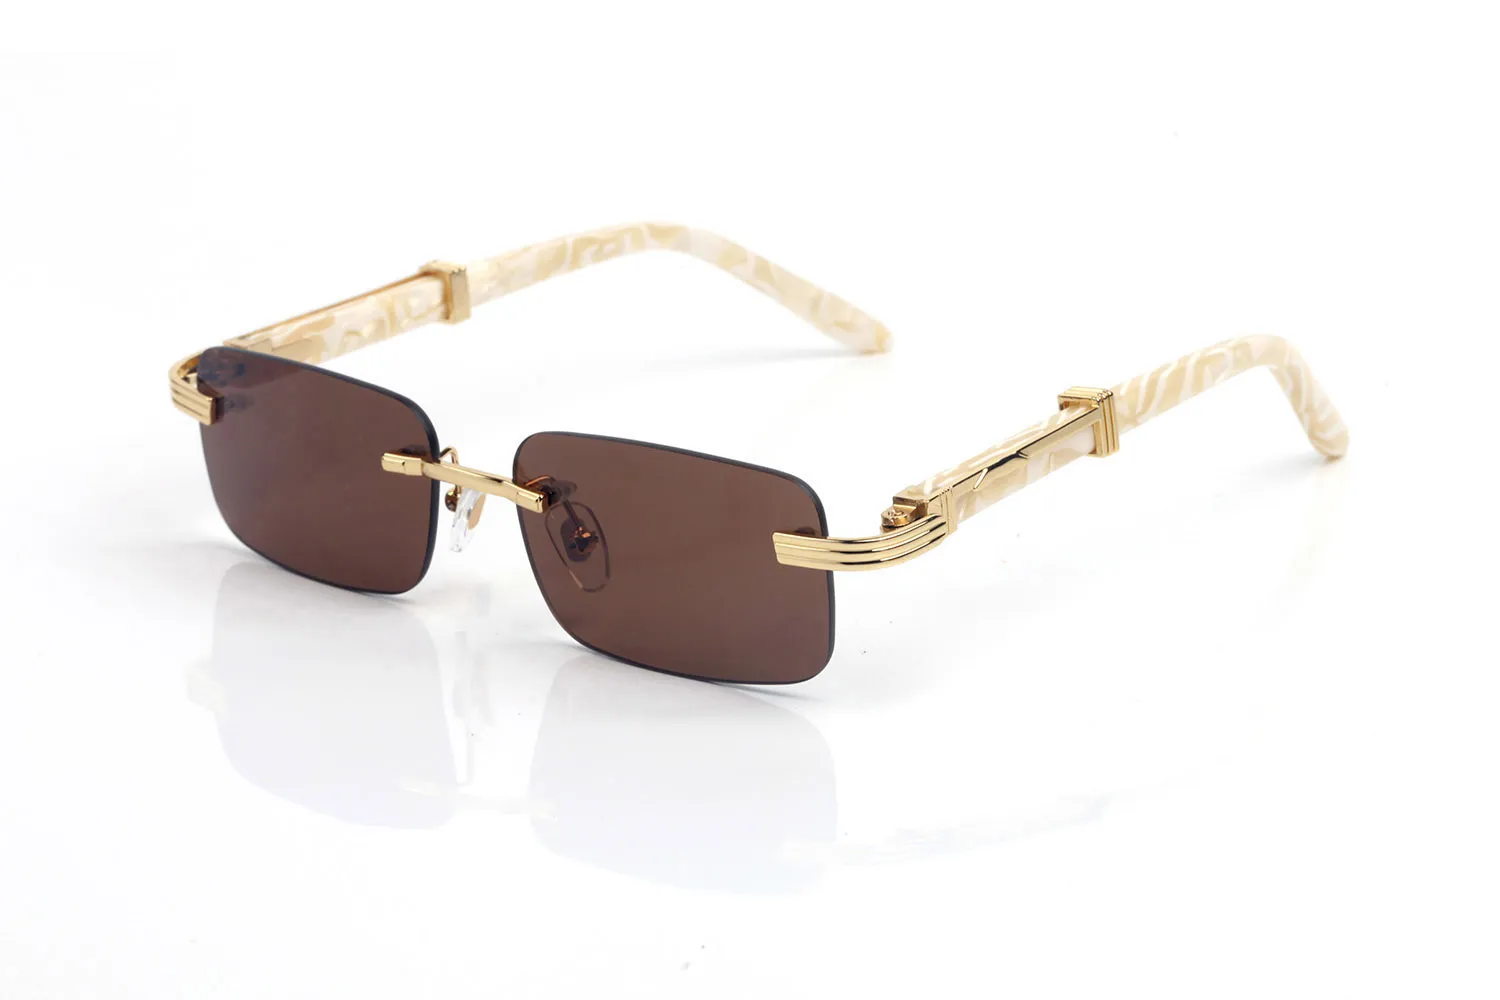 France Design Rimless Sunglasses For Mens Wooden Buffalo Horn Glasses Optical eyeglasses Women Waving Gold Wooden Eyewear Frames L2674